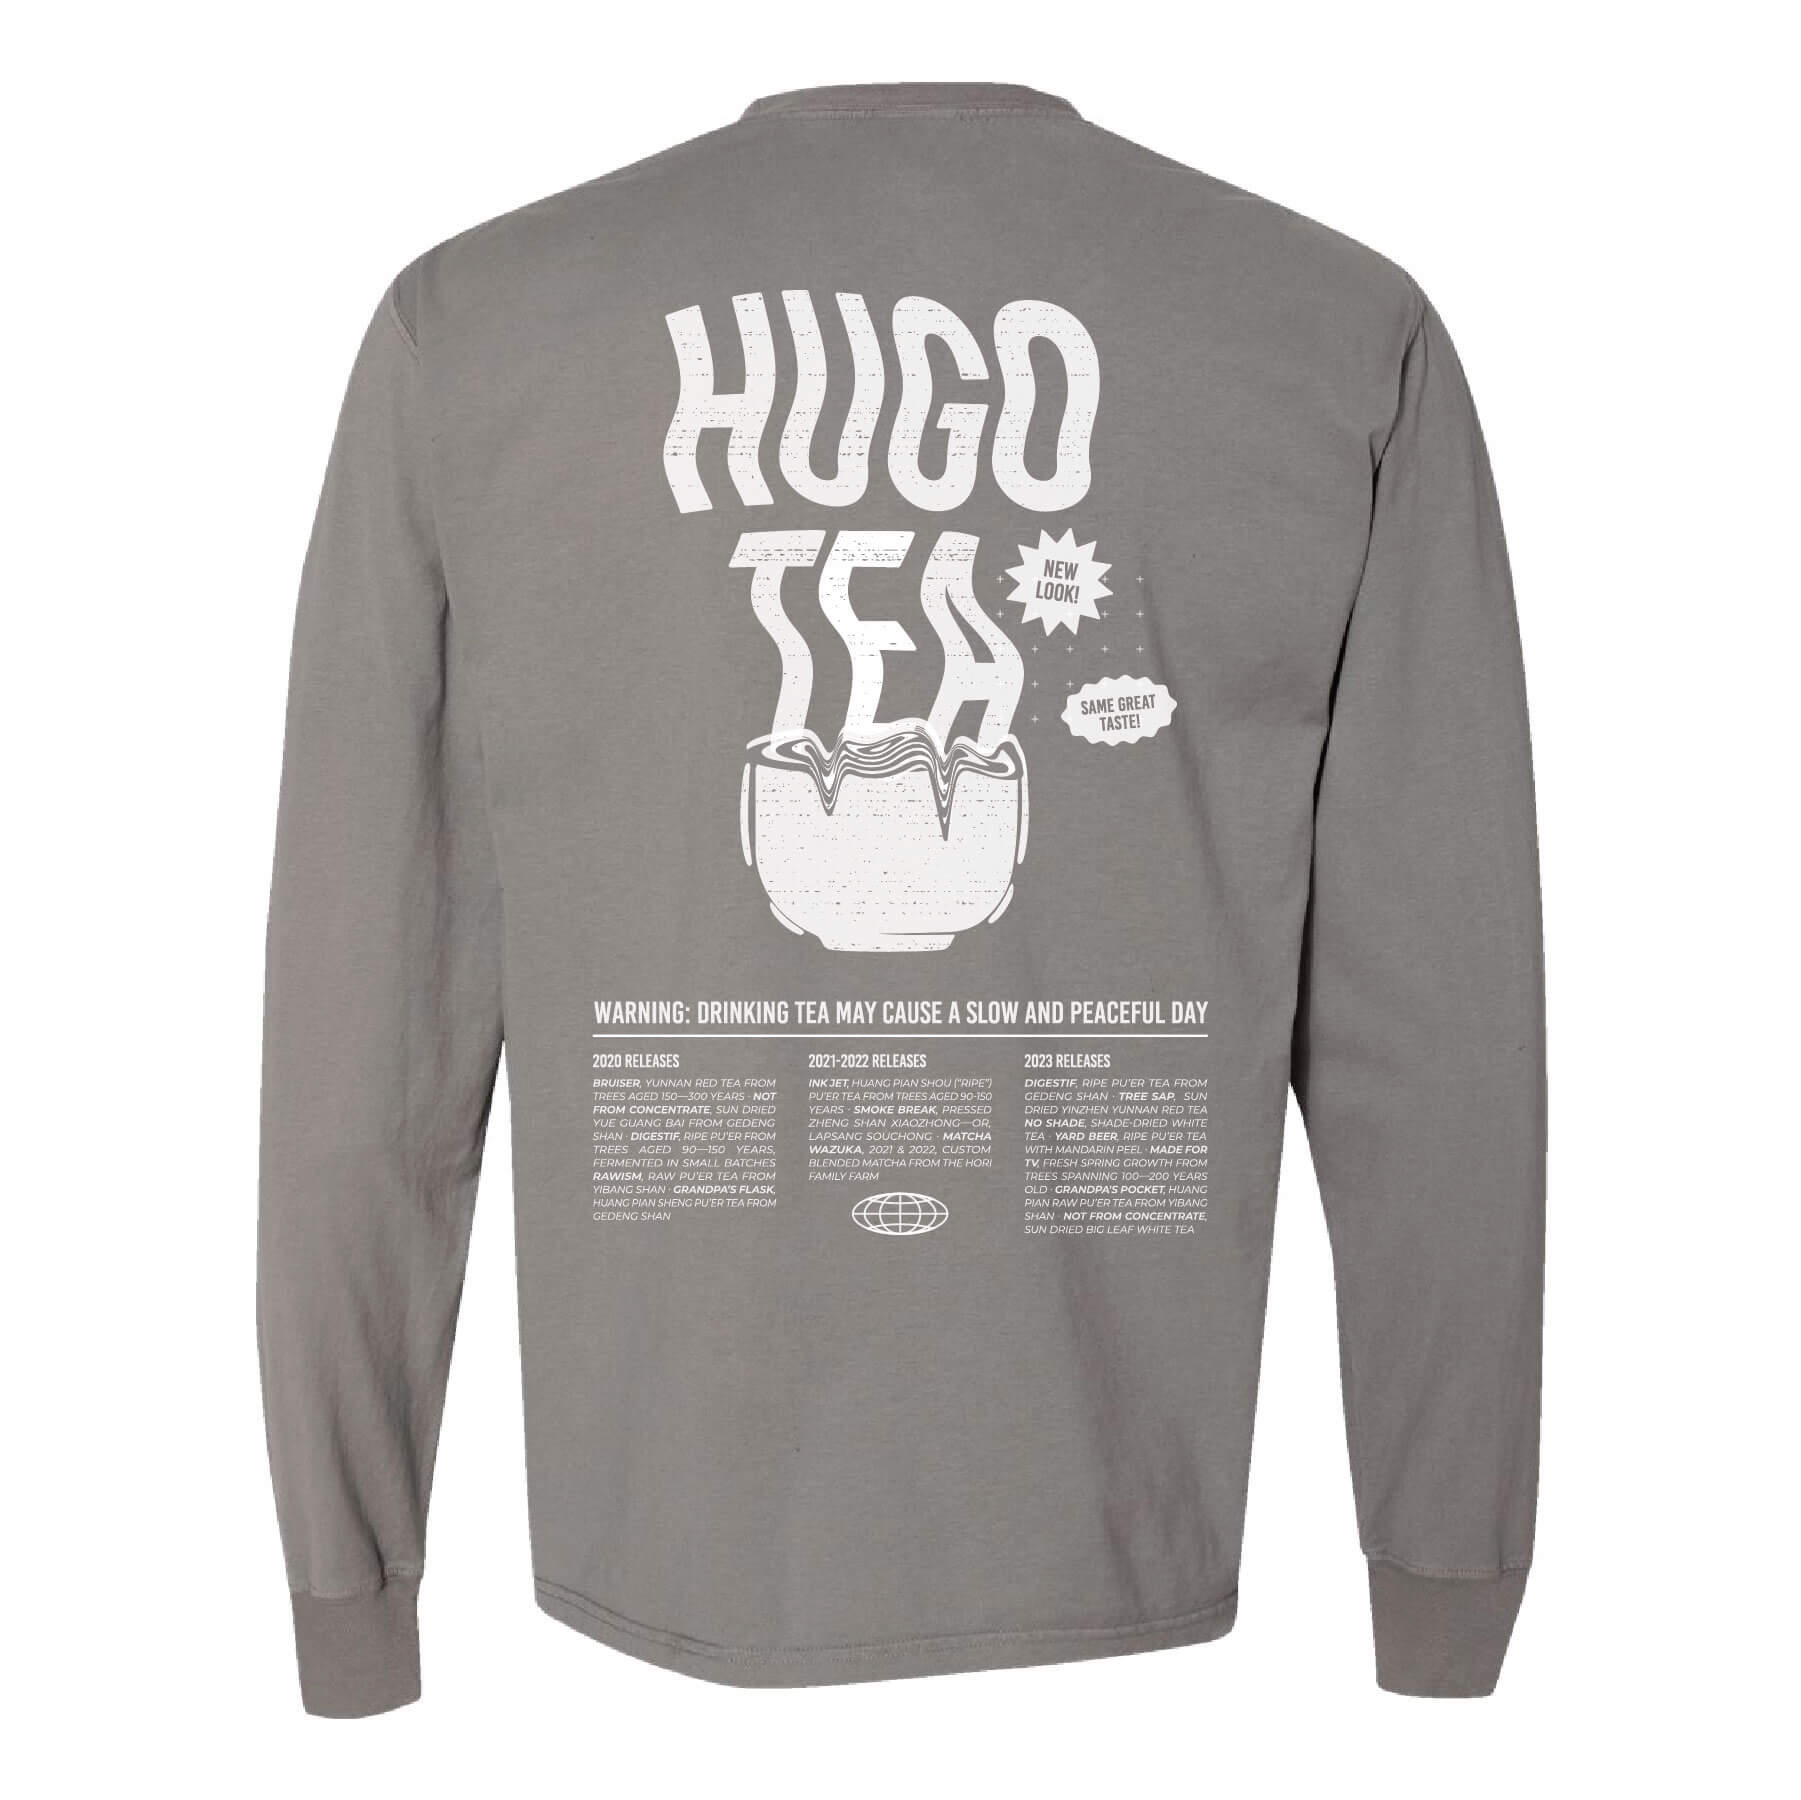 Hugo Tea "New Look" Shirt Back